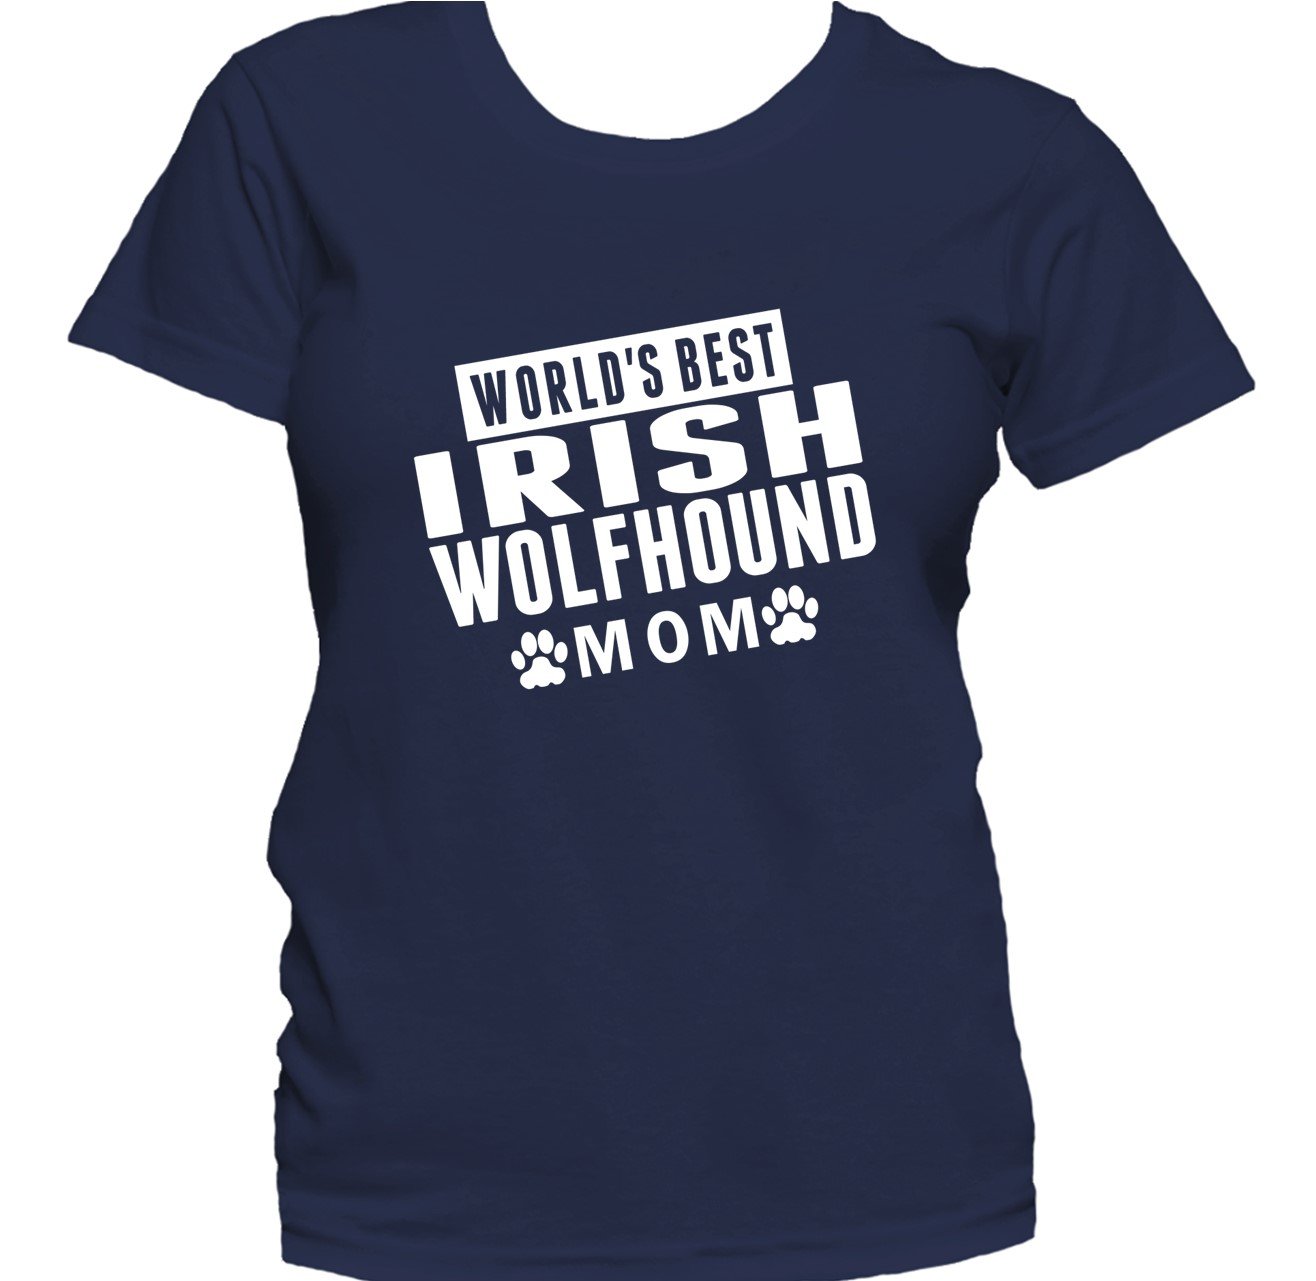 Irish Wolfhound Mom Shirt - World's Best Irish Wolfhound Mom Women's T-Shirt